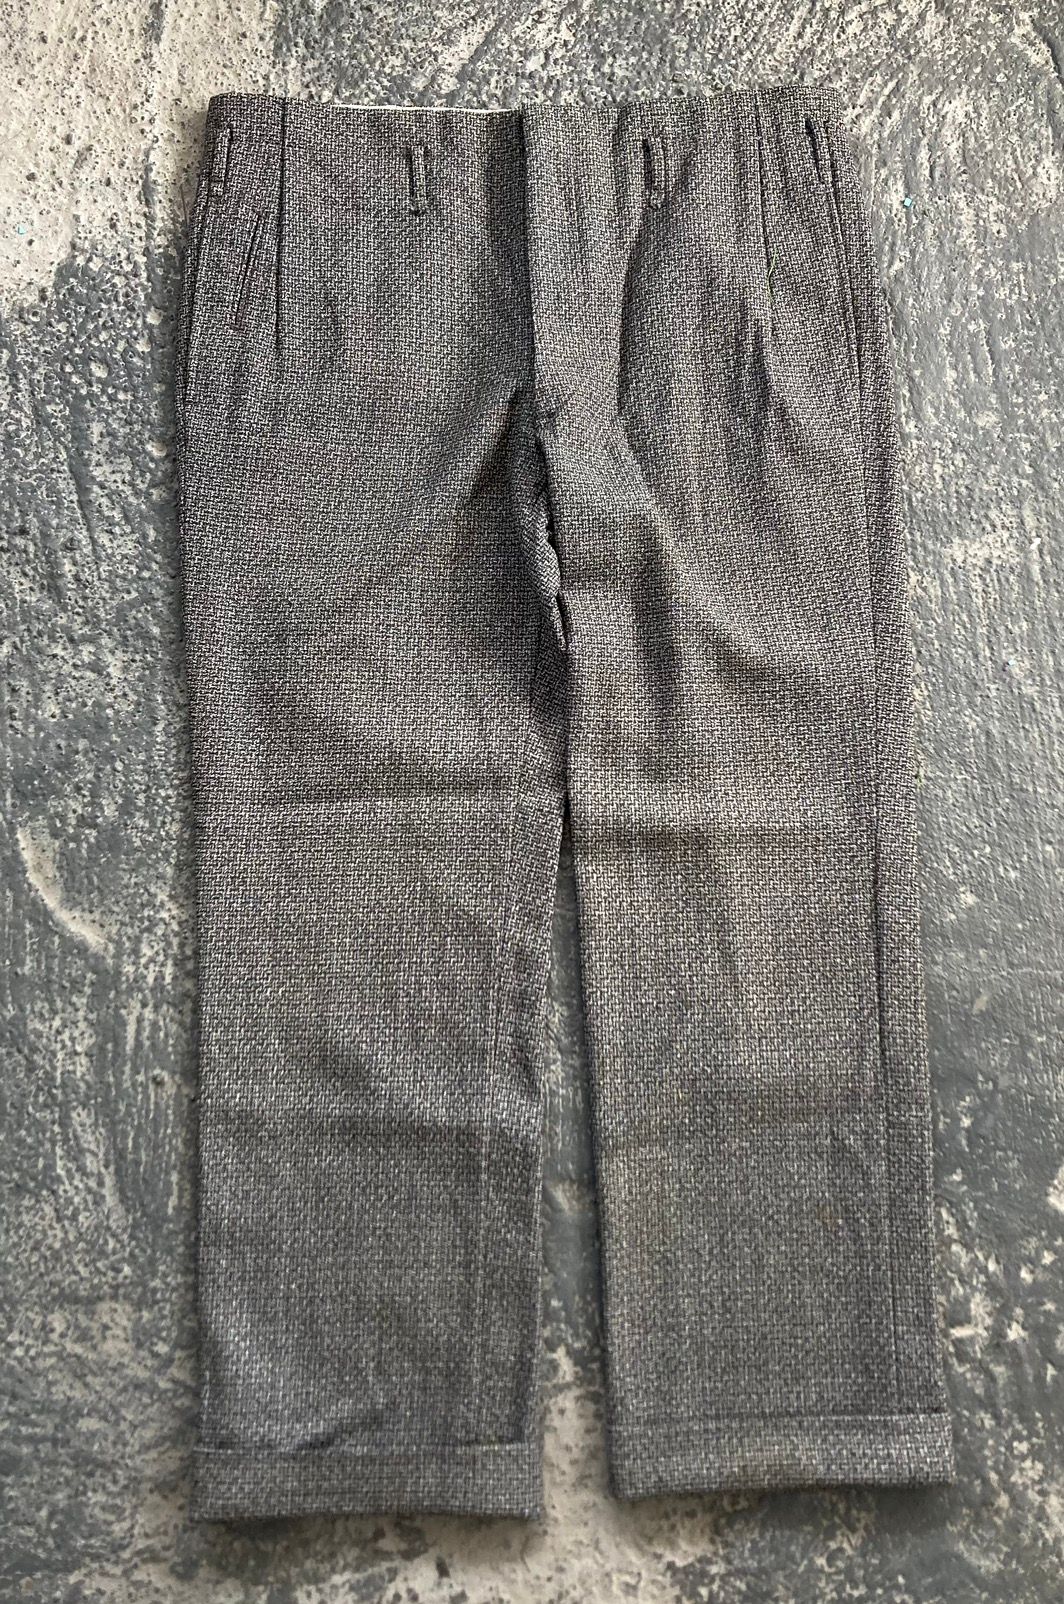 Vintage Tweed Trousers - 1